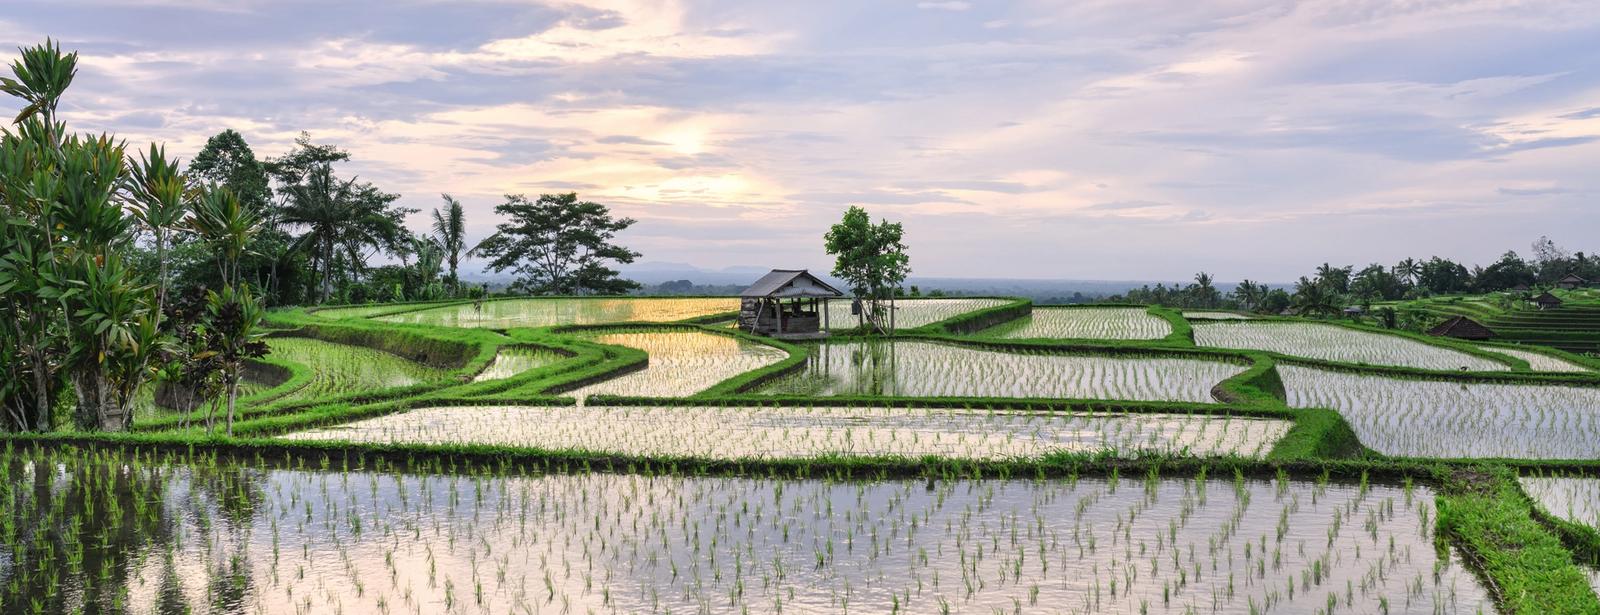 terrazze di riso indonesia